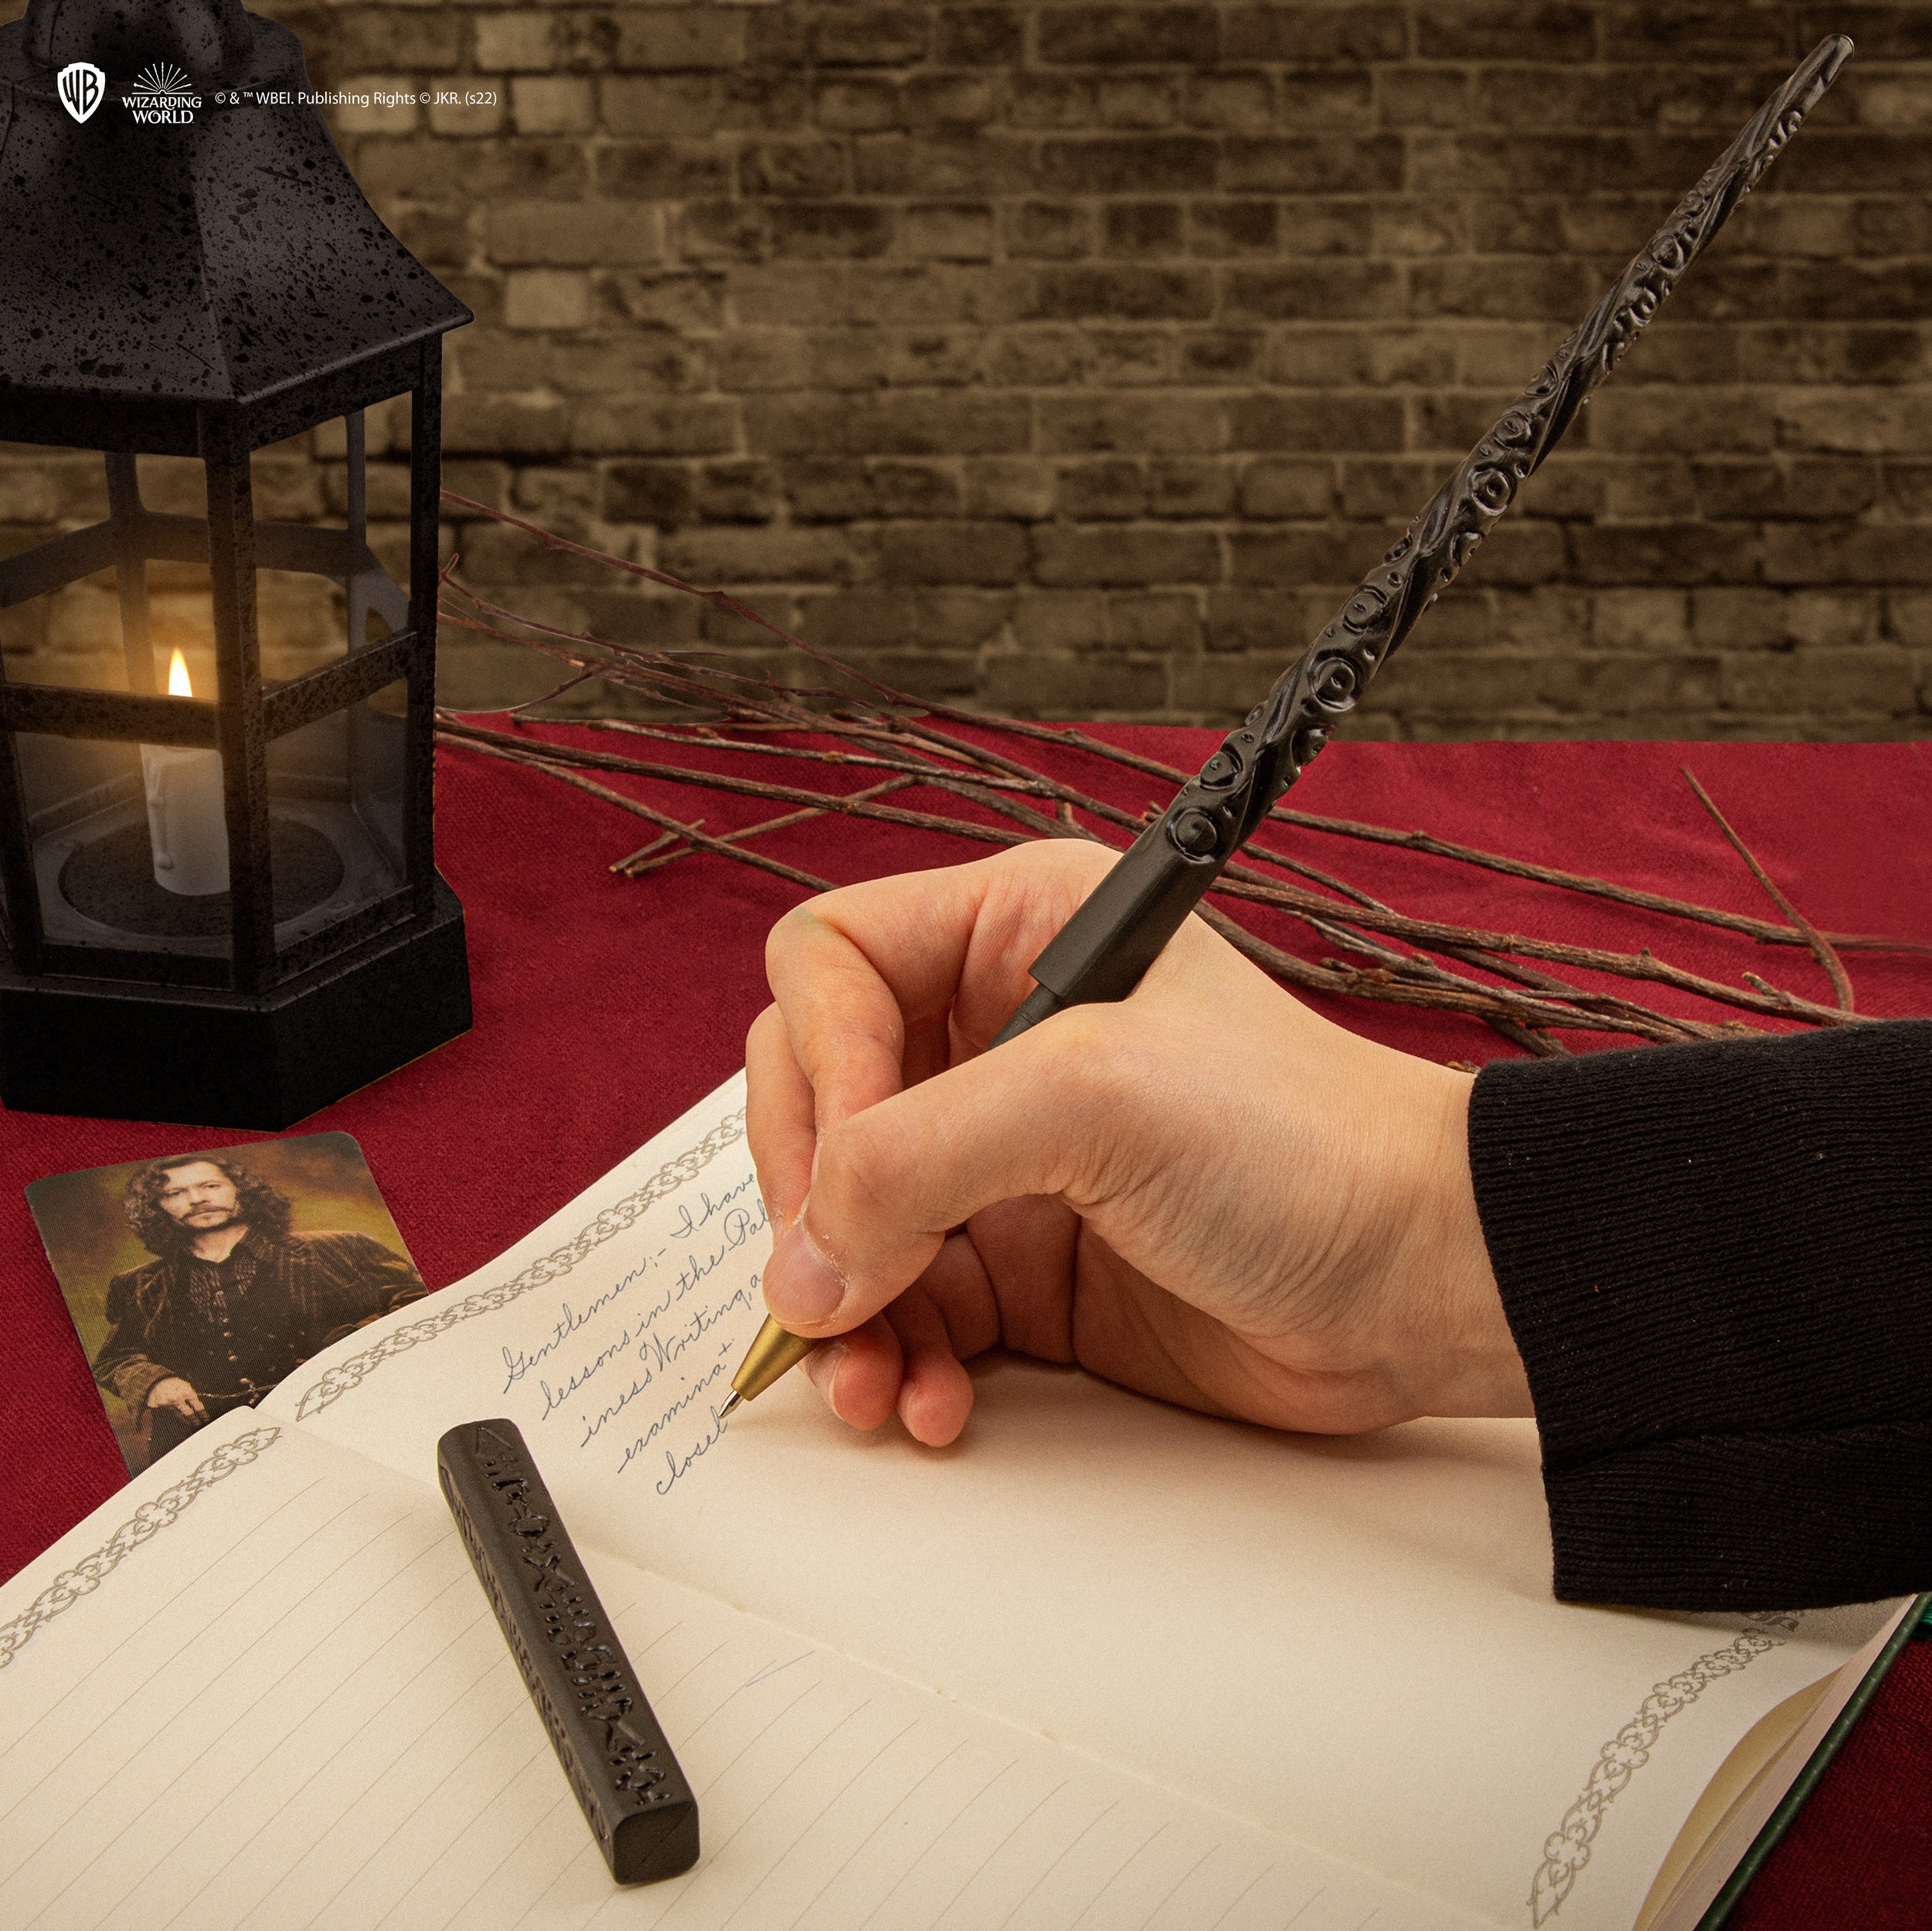 Set stylo et crayon Harry Potter baguettes magiques sur Cec Design